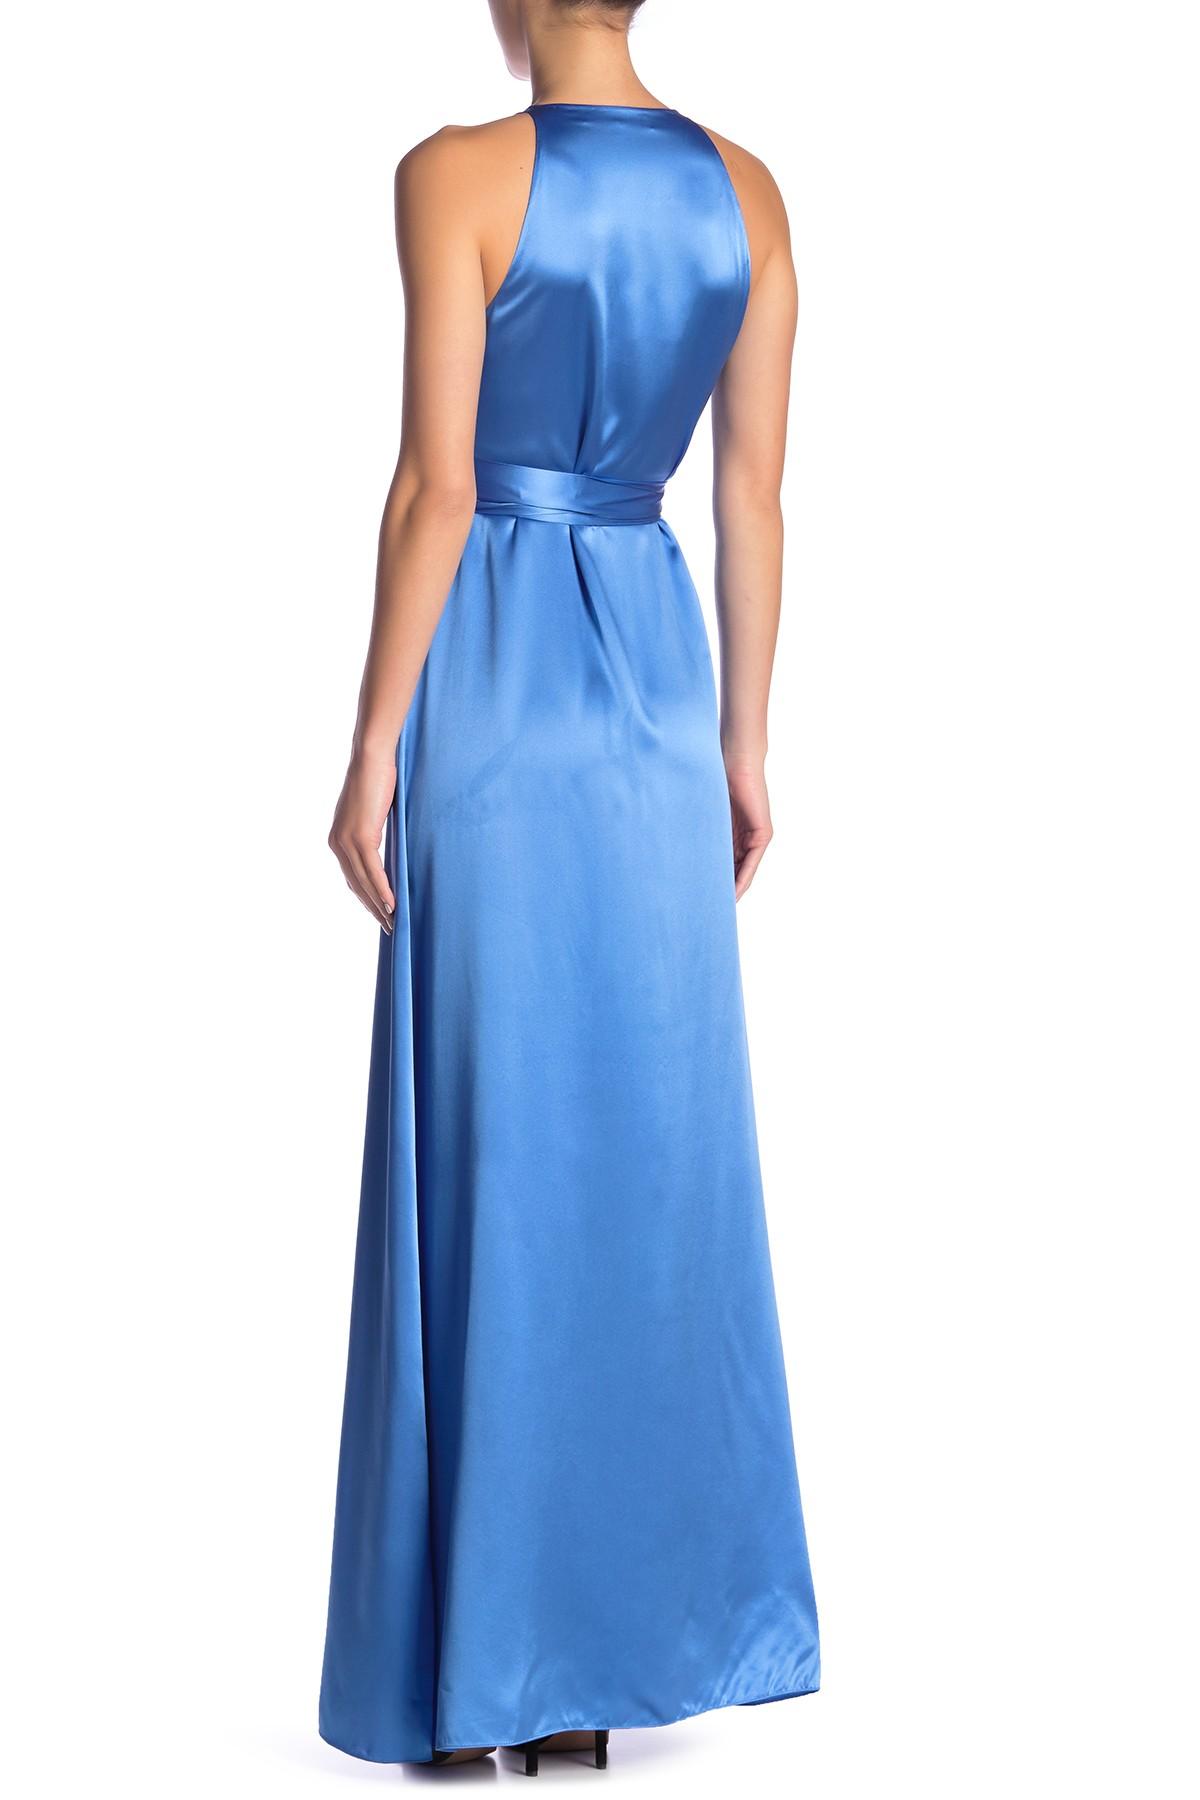 Diane von Furstenberg Silk Sleeveless Wrap Maxi Dress in Blue - Lyst